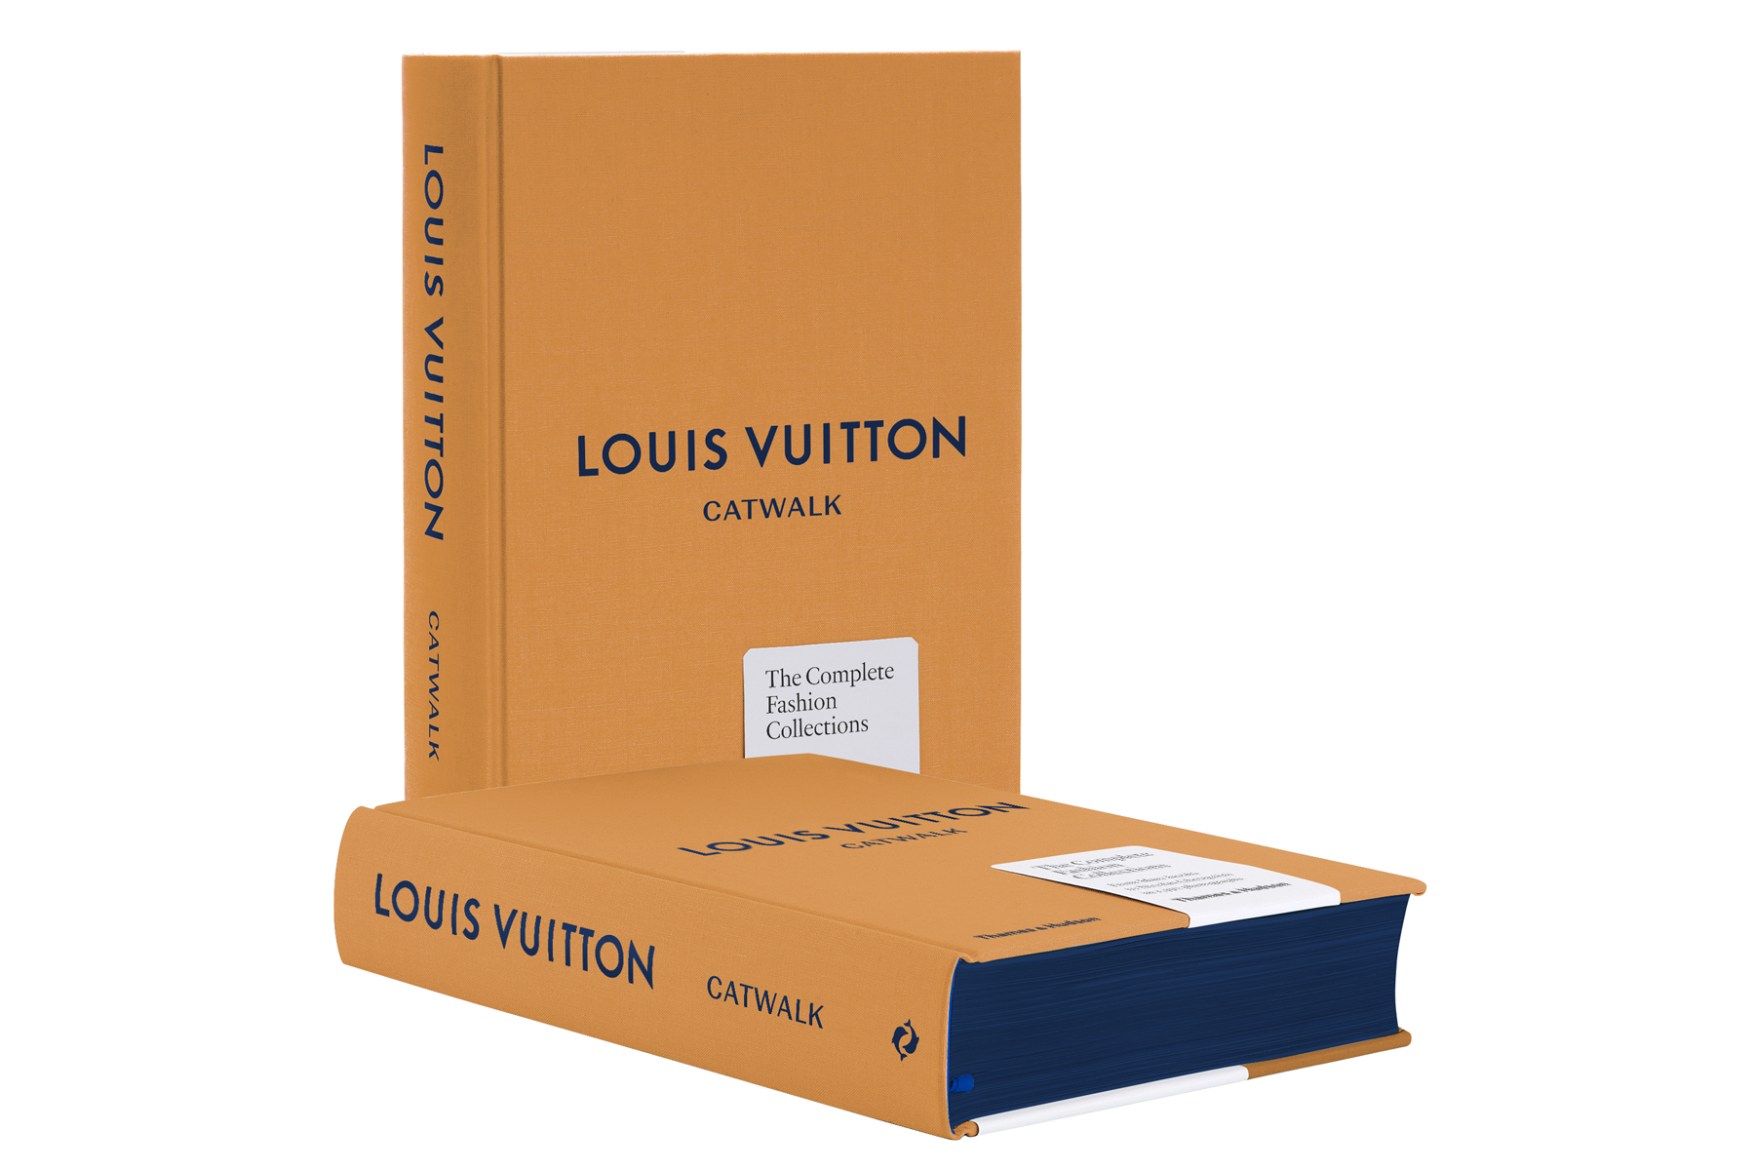 集 20 年之精华 - Louis Vuitton 推出《Louis Vuitton Catwalk》时装秀图鉴